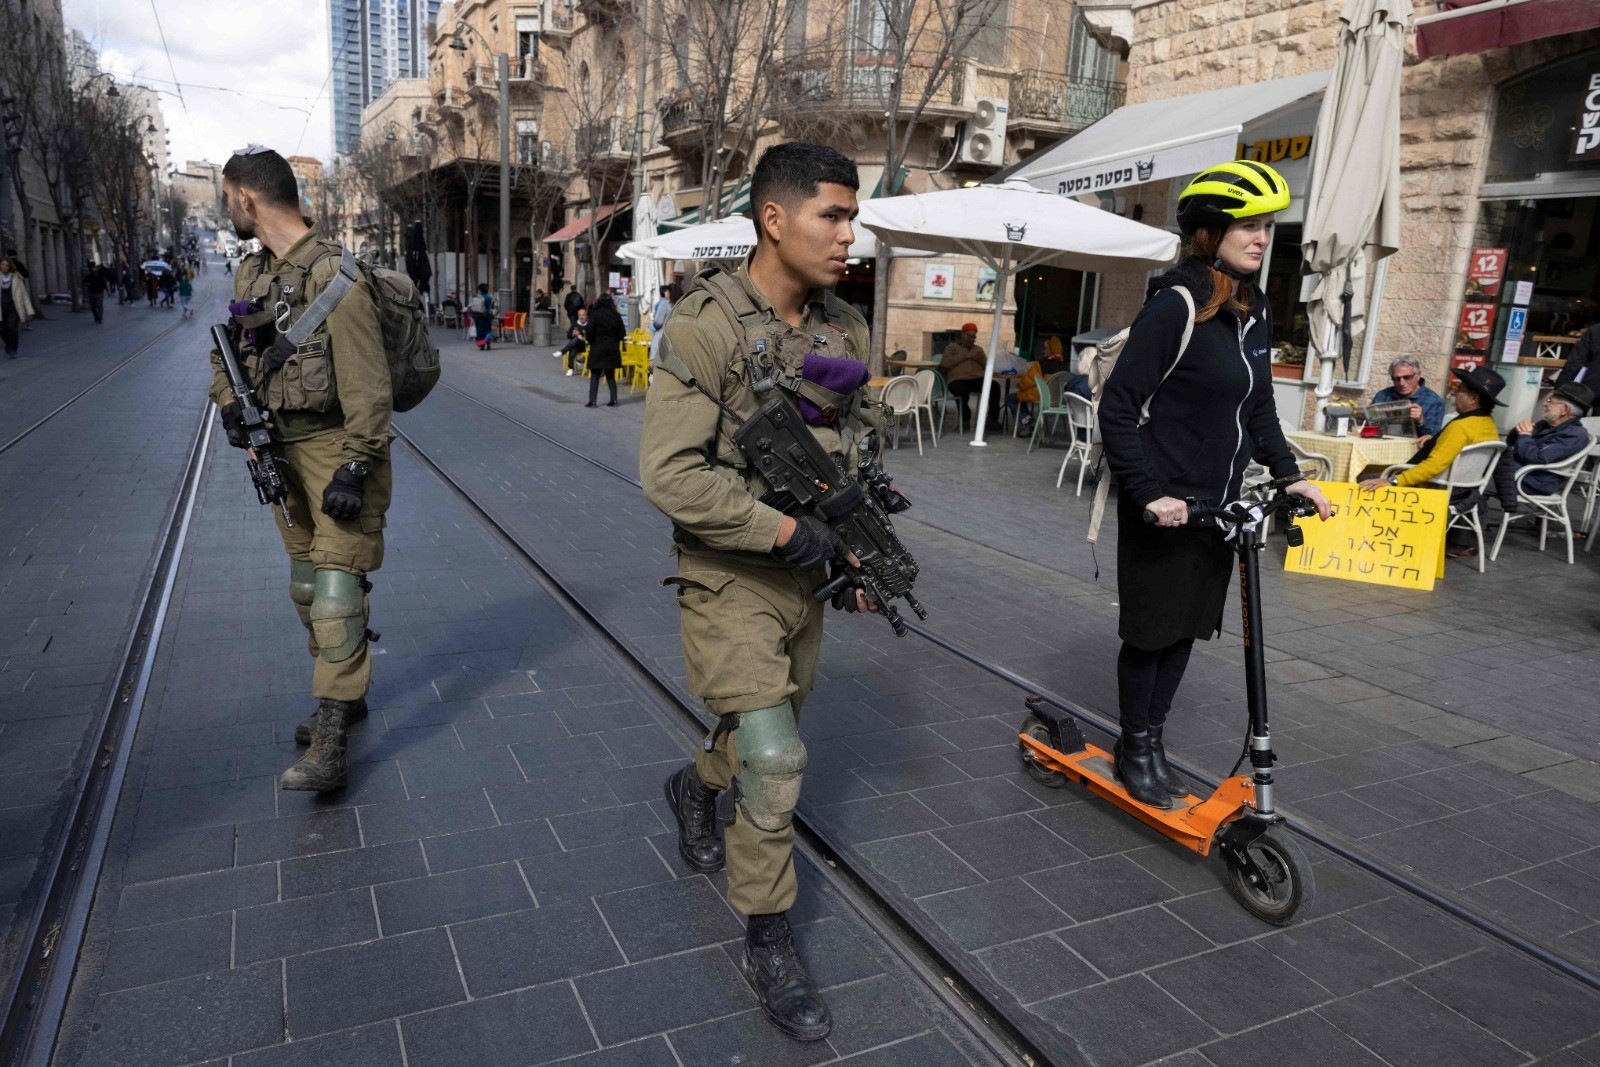 الجيش الإسرائيلي ينتشر في قلب القدس المحتلة لمساندة الشرطة  - الفرنسية 7.jpg